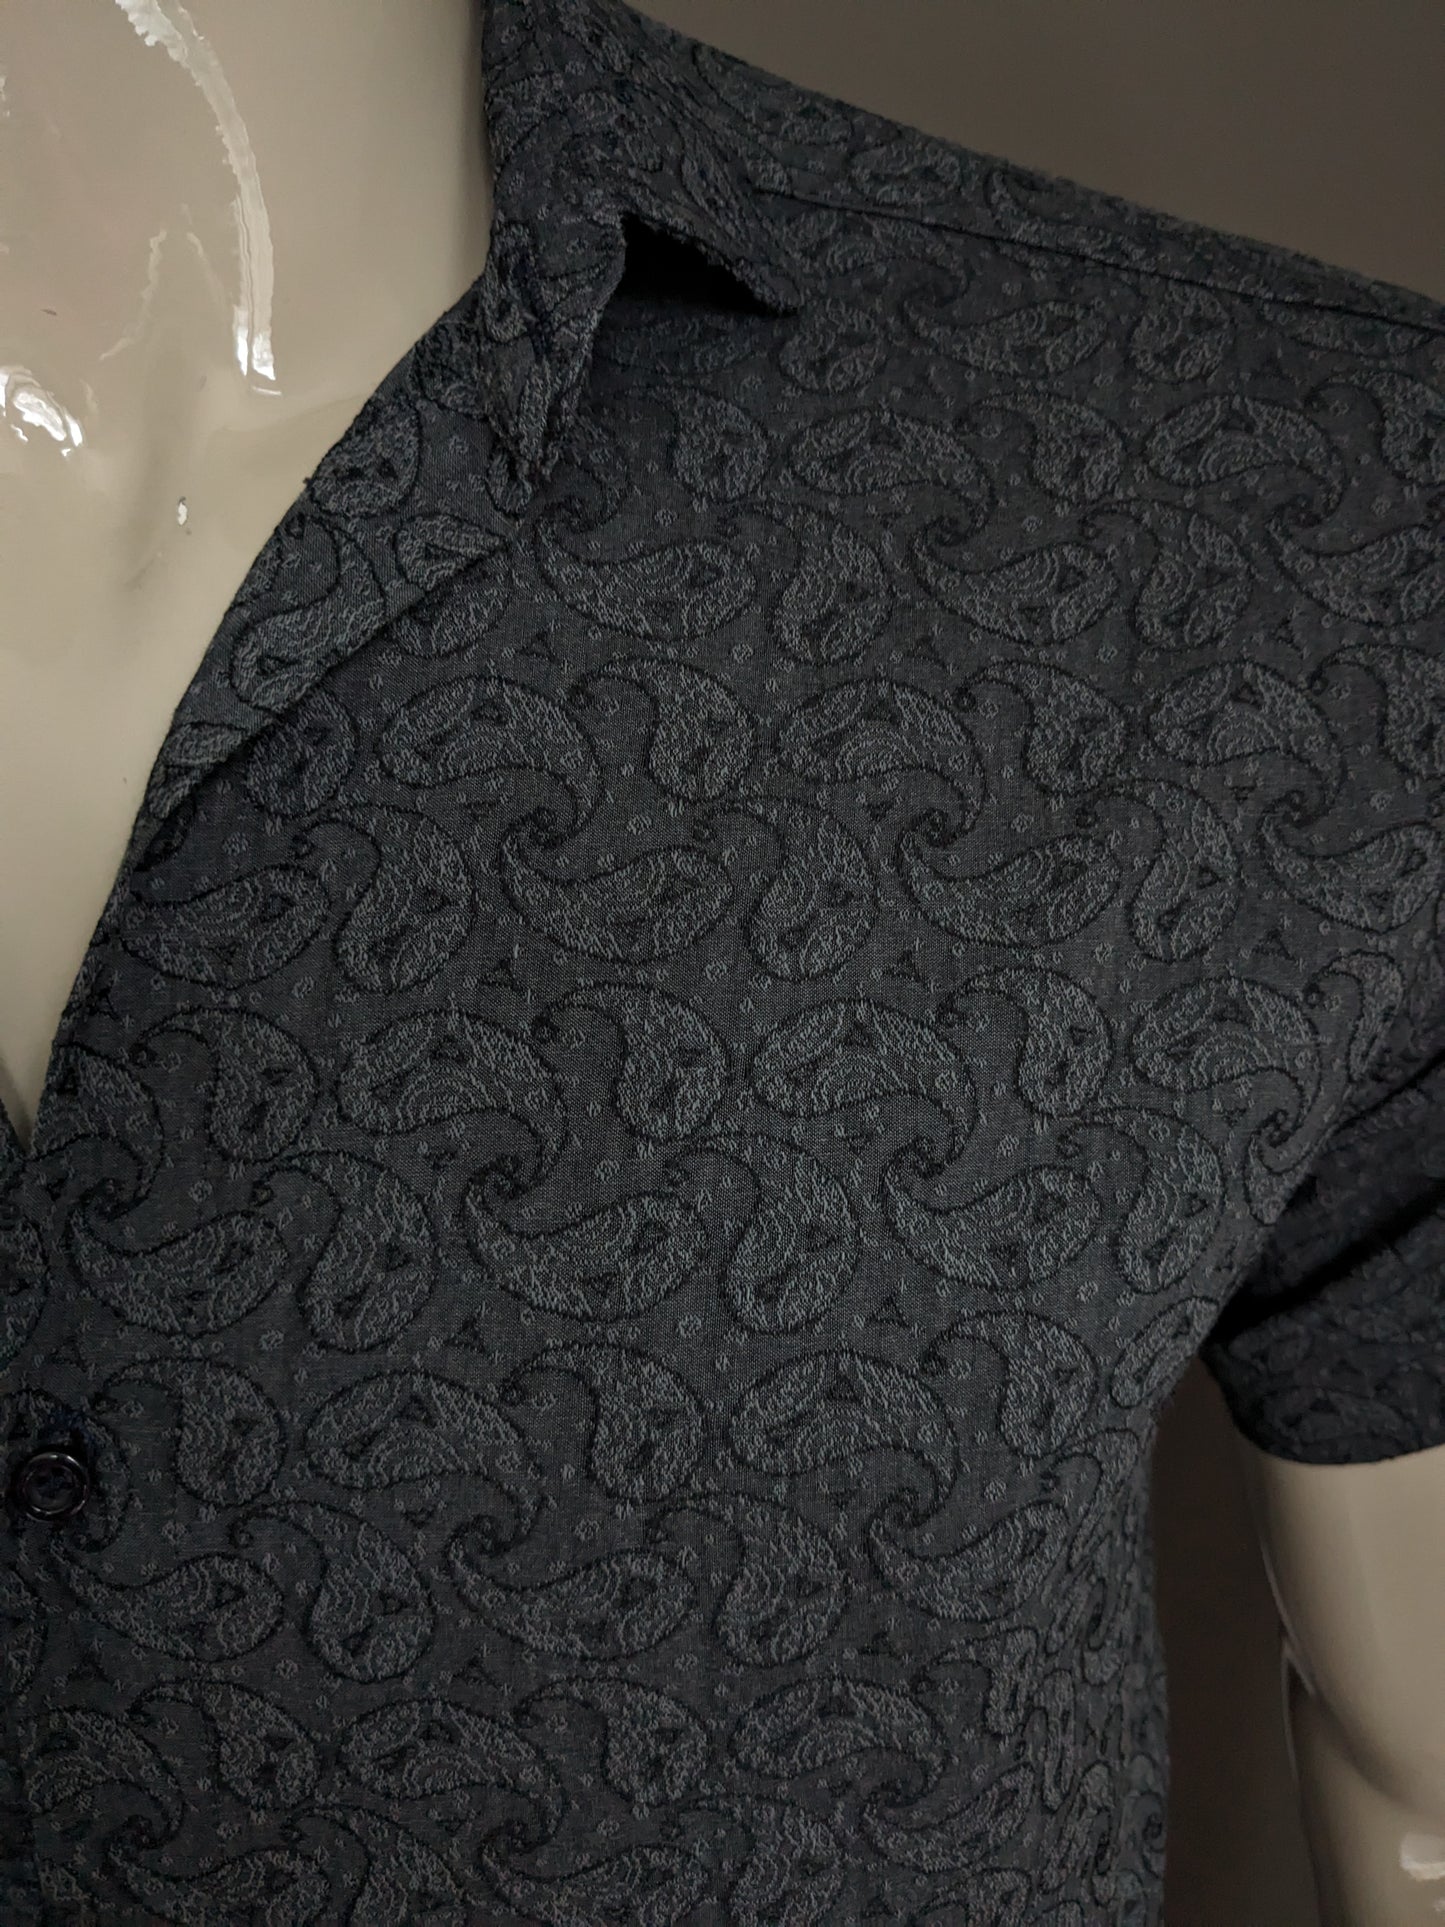 Camisa Mudenni mangas cortas. Impresión gris de Paisley Black Paisley. Tamaño L. estiramiento.